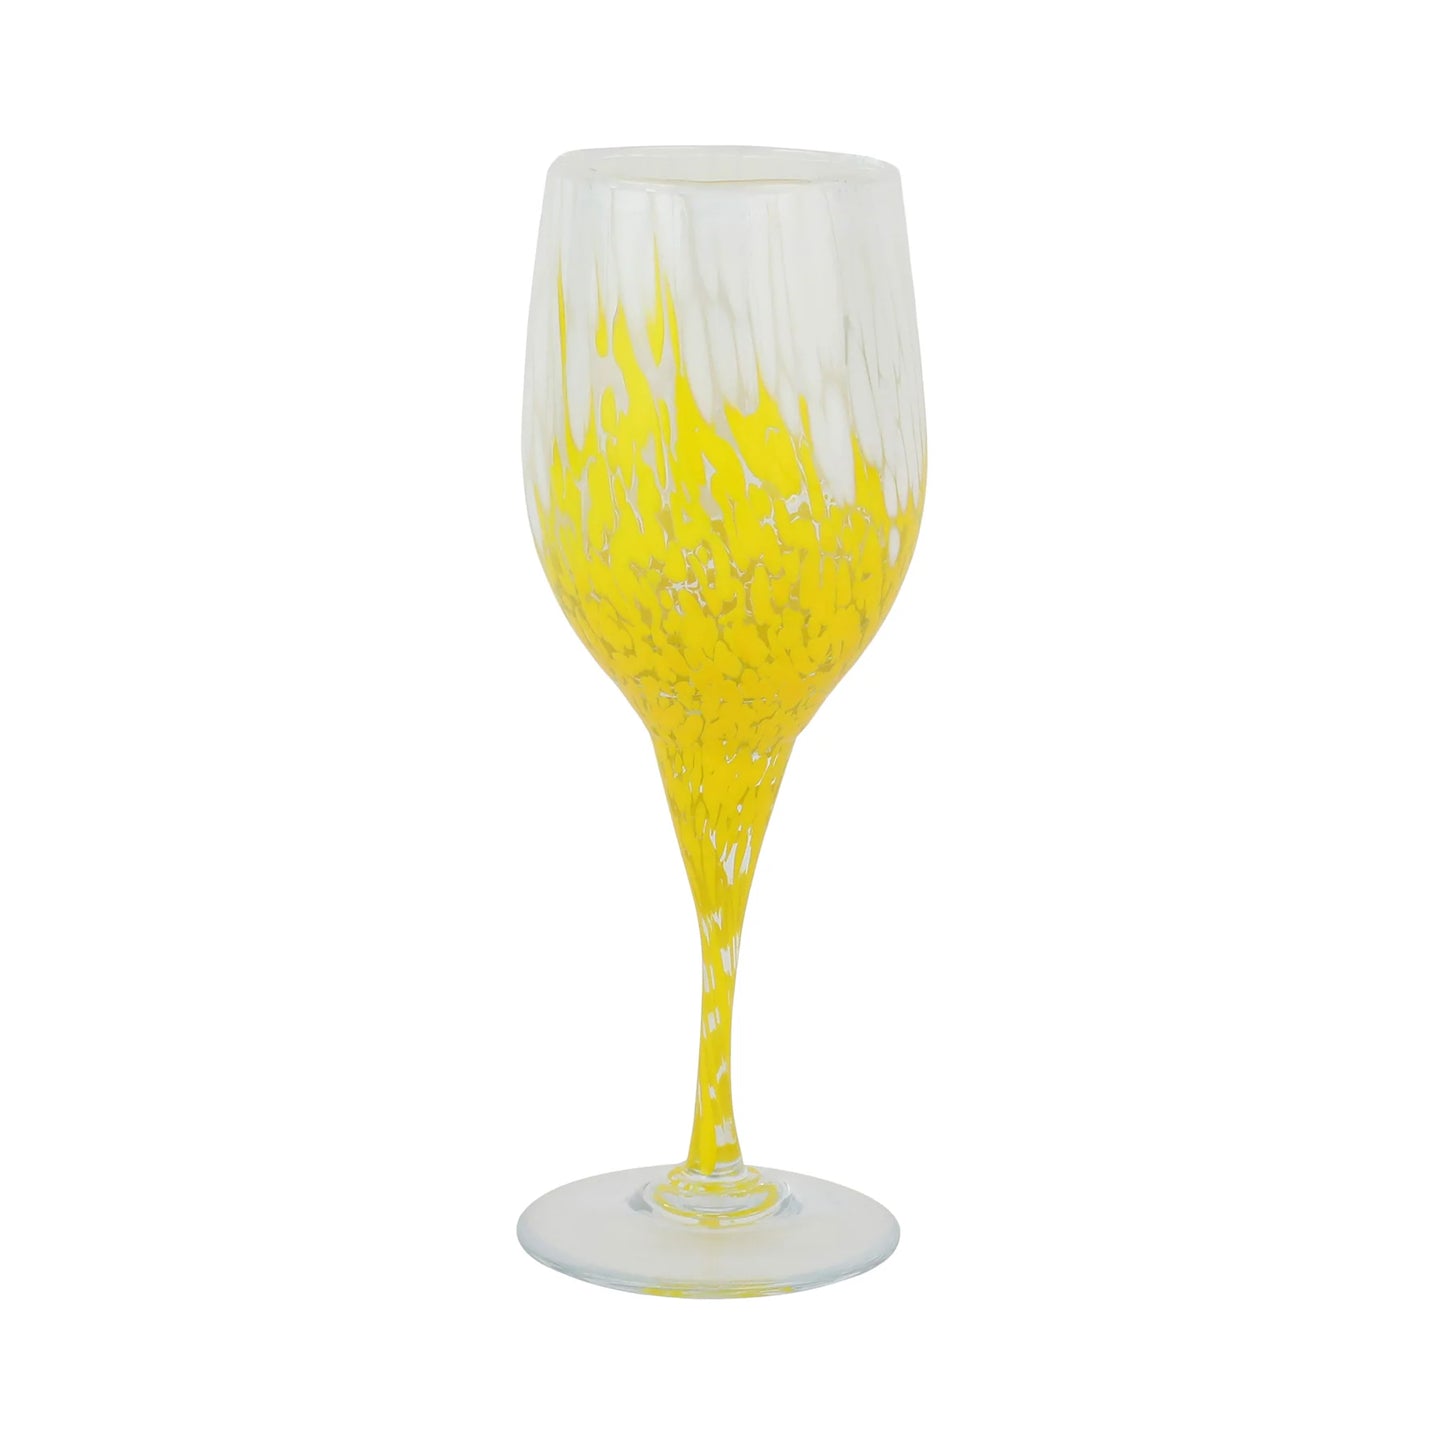 Vietri Nuvola White and Yellow Wine Glass